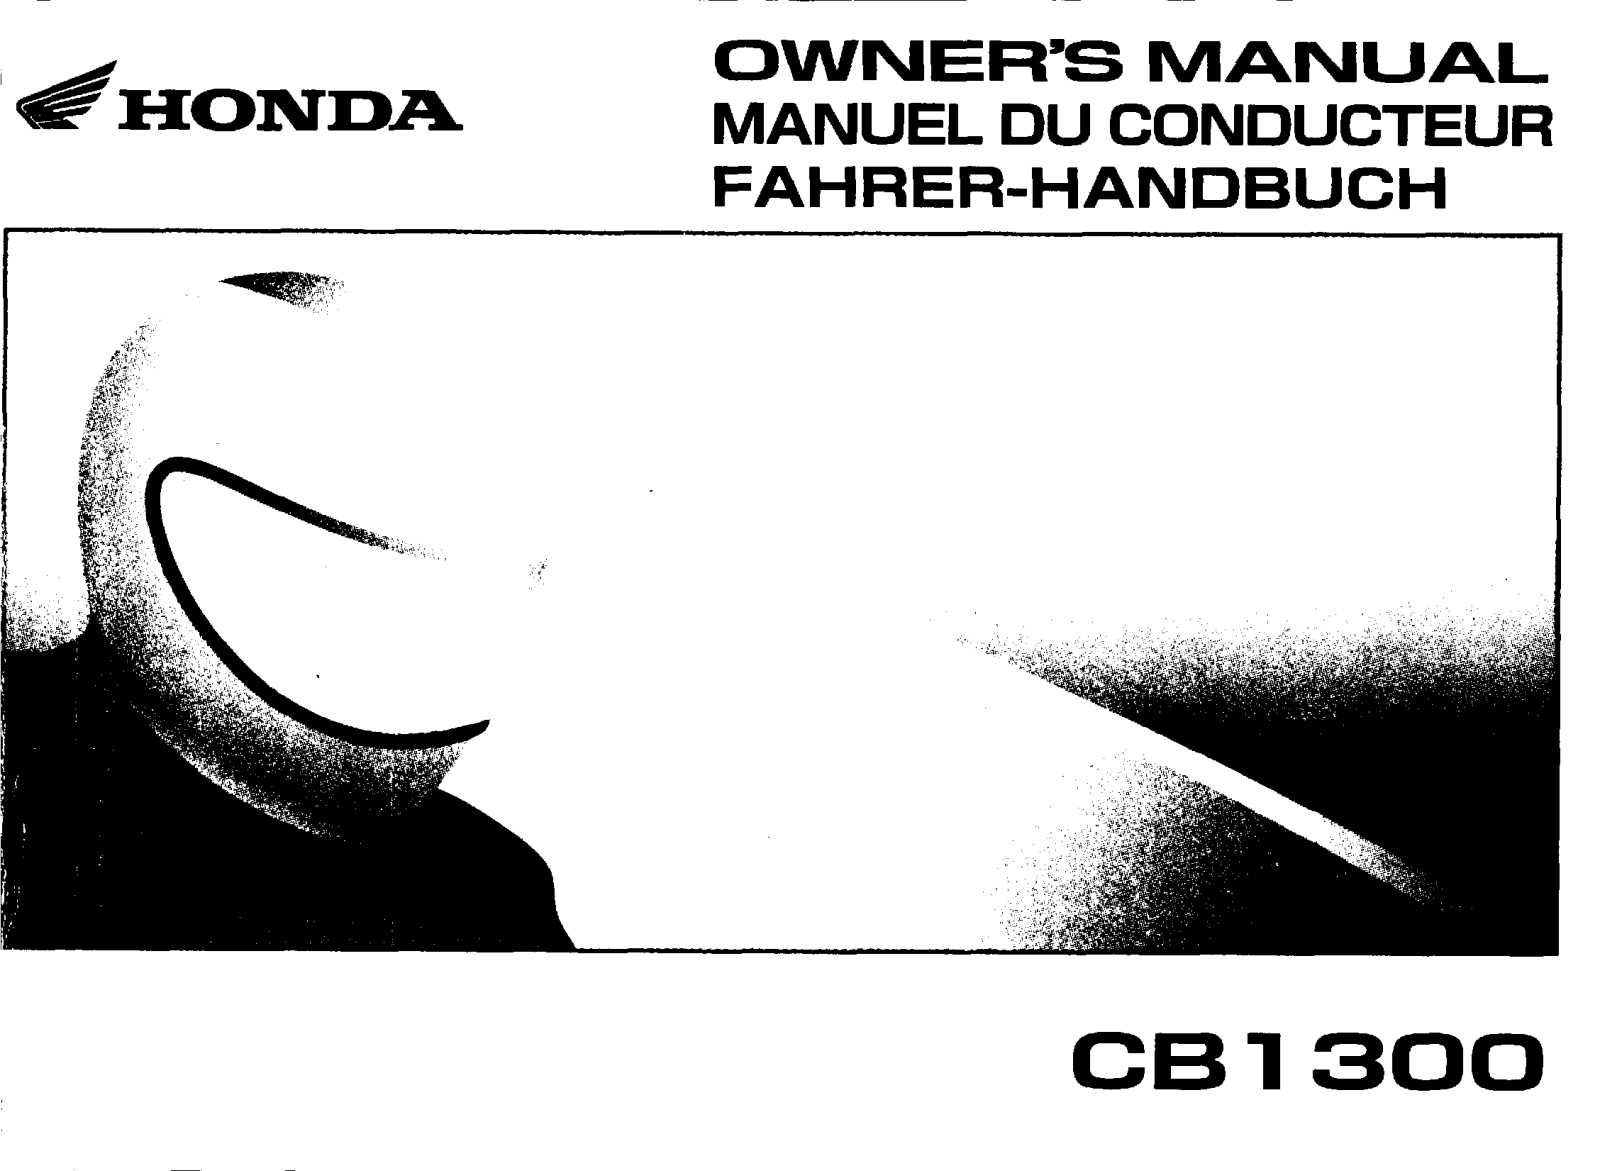 Honda CB1300 Owner's Manual